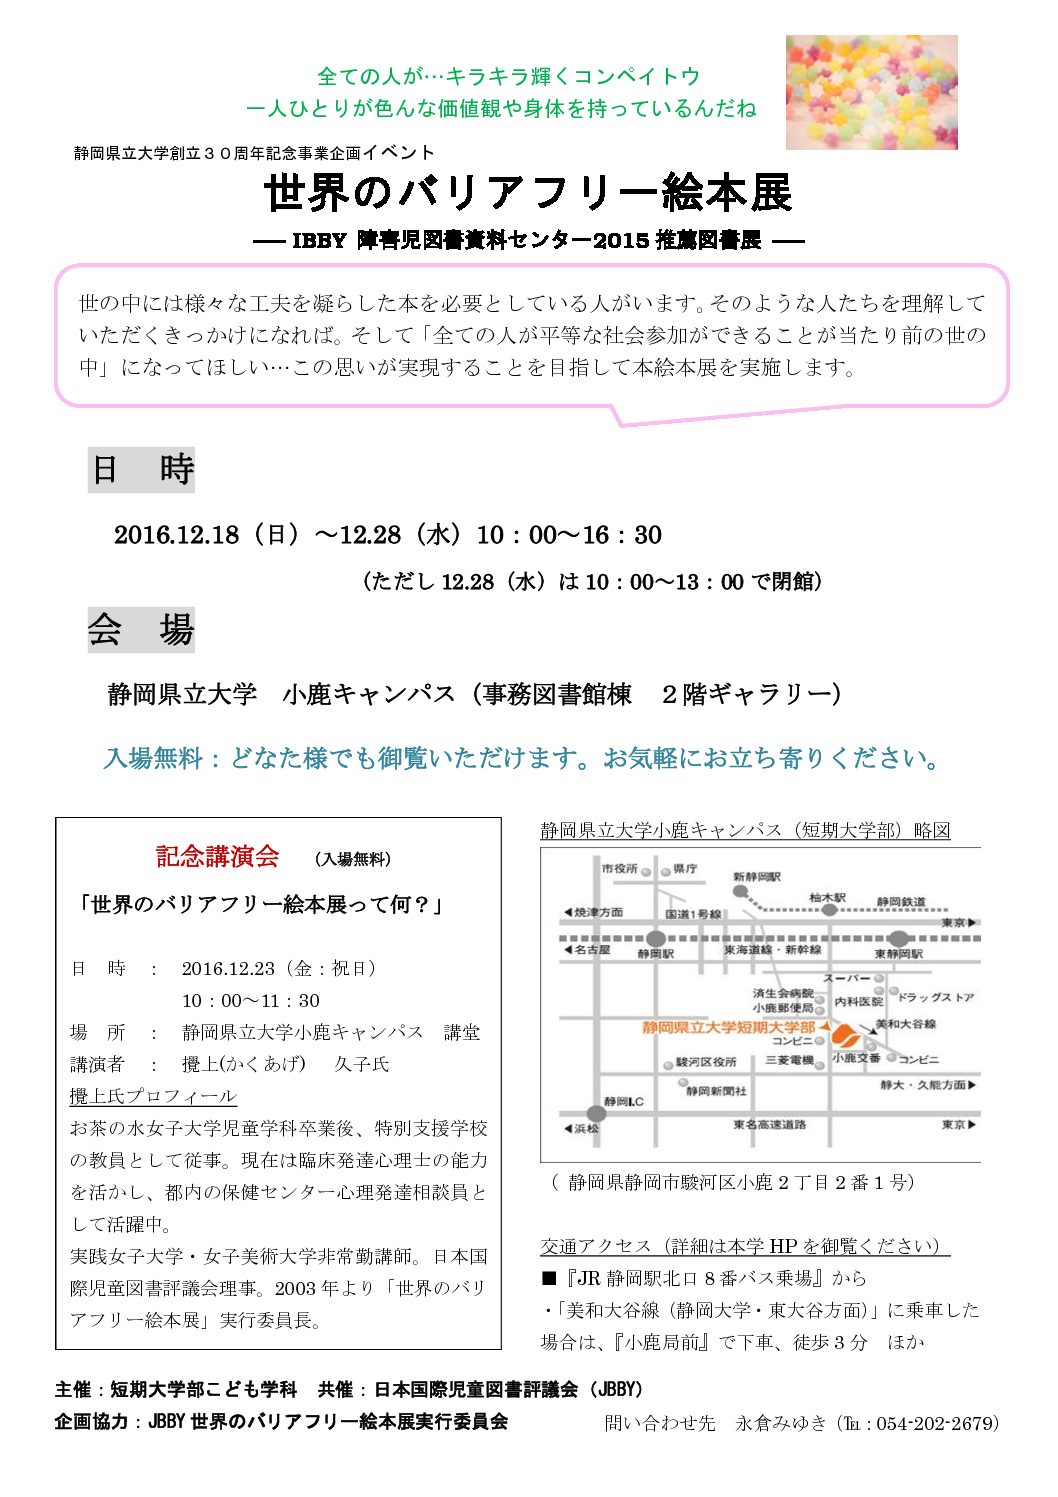 静岡県立大学創立30周年記念事業イベント 12月18日から小鹿キャンパスで開催 バリアフリー絵本